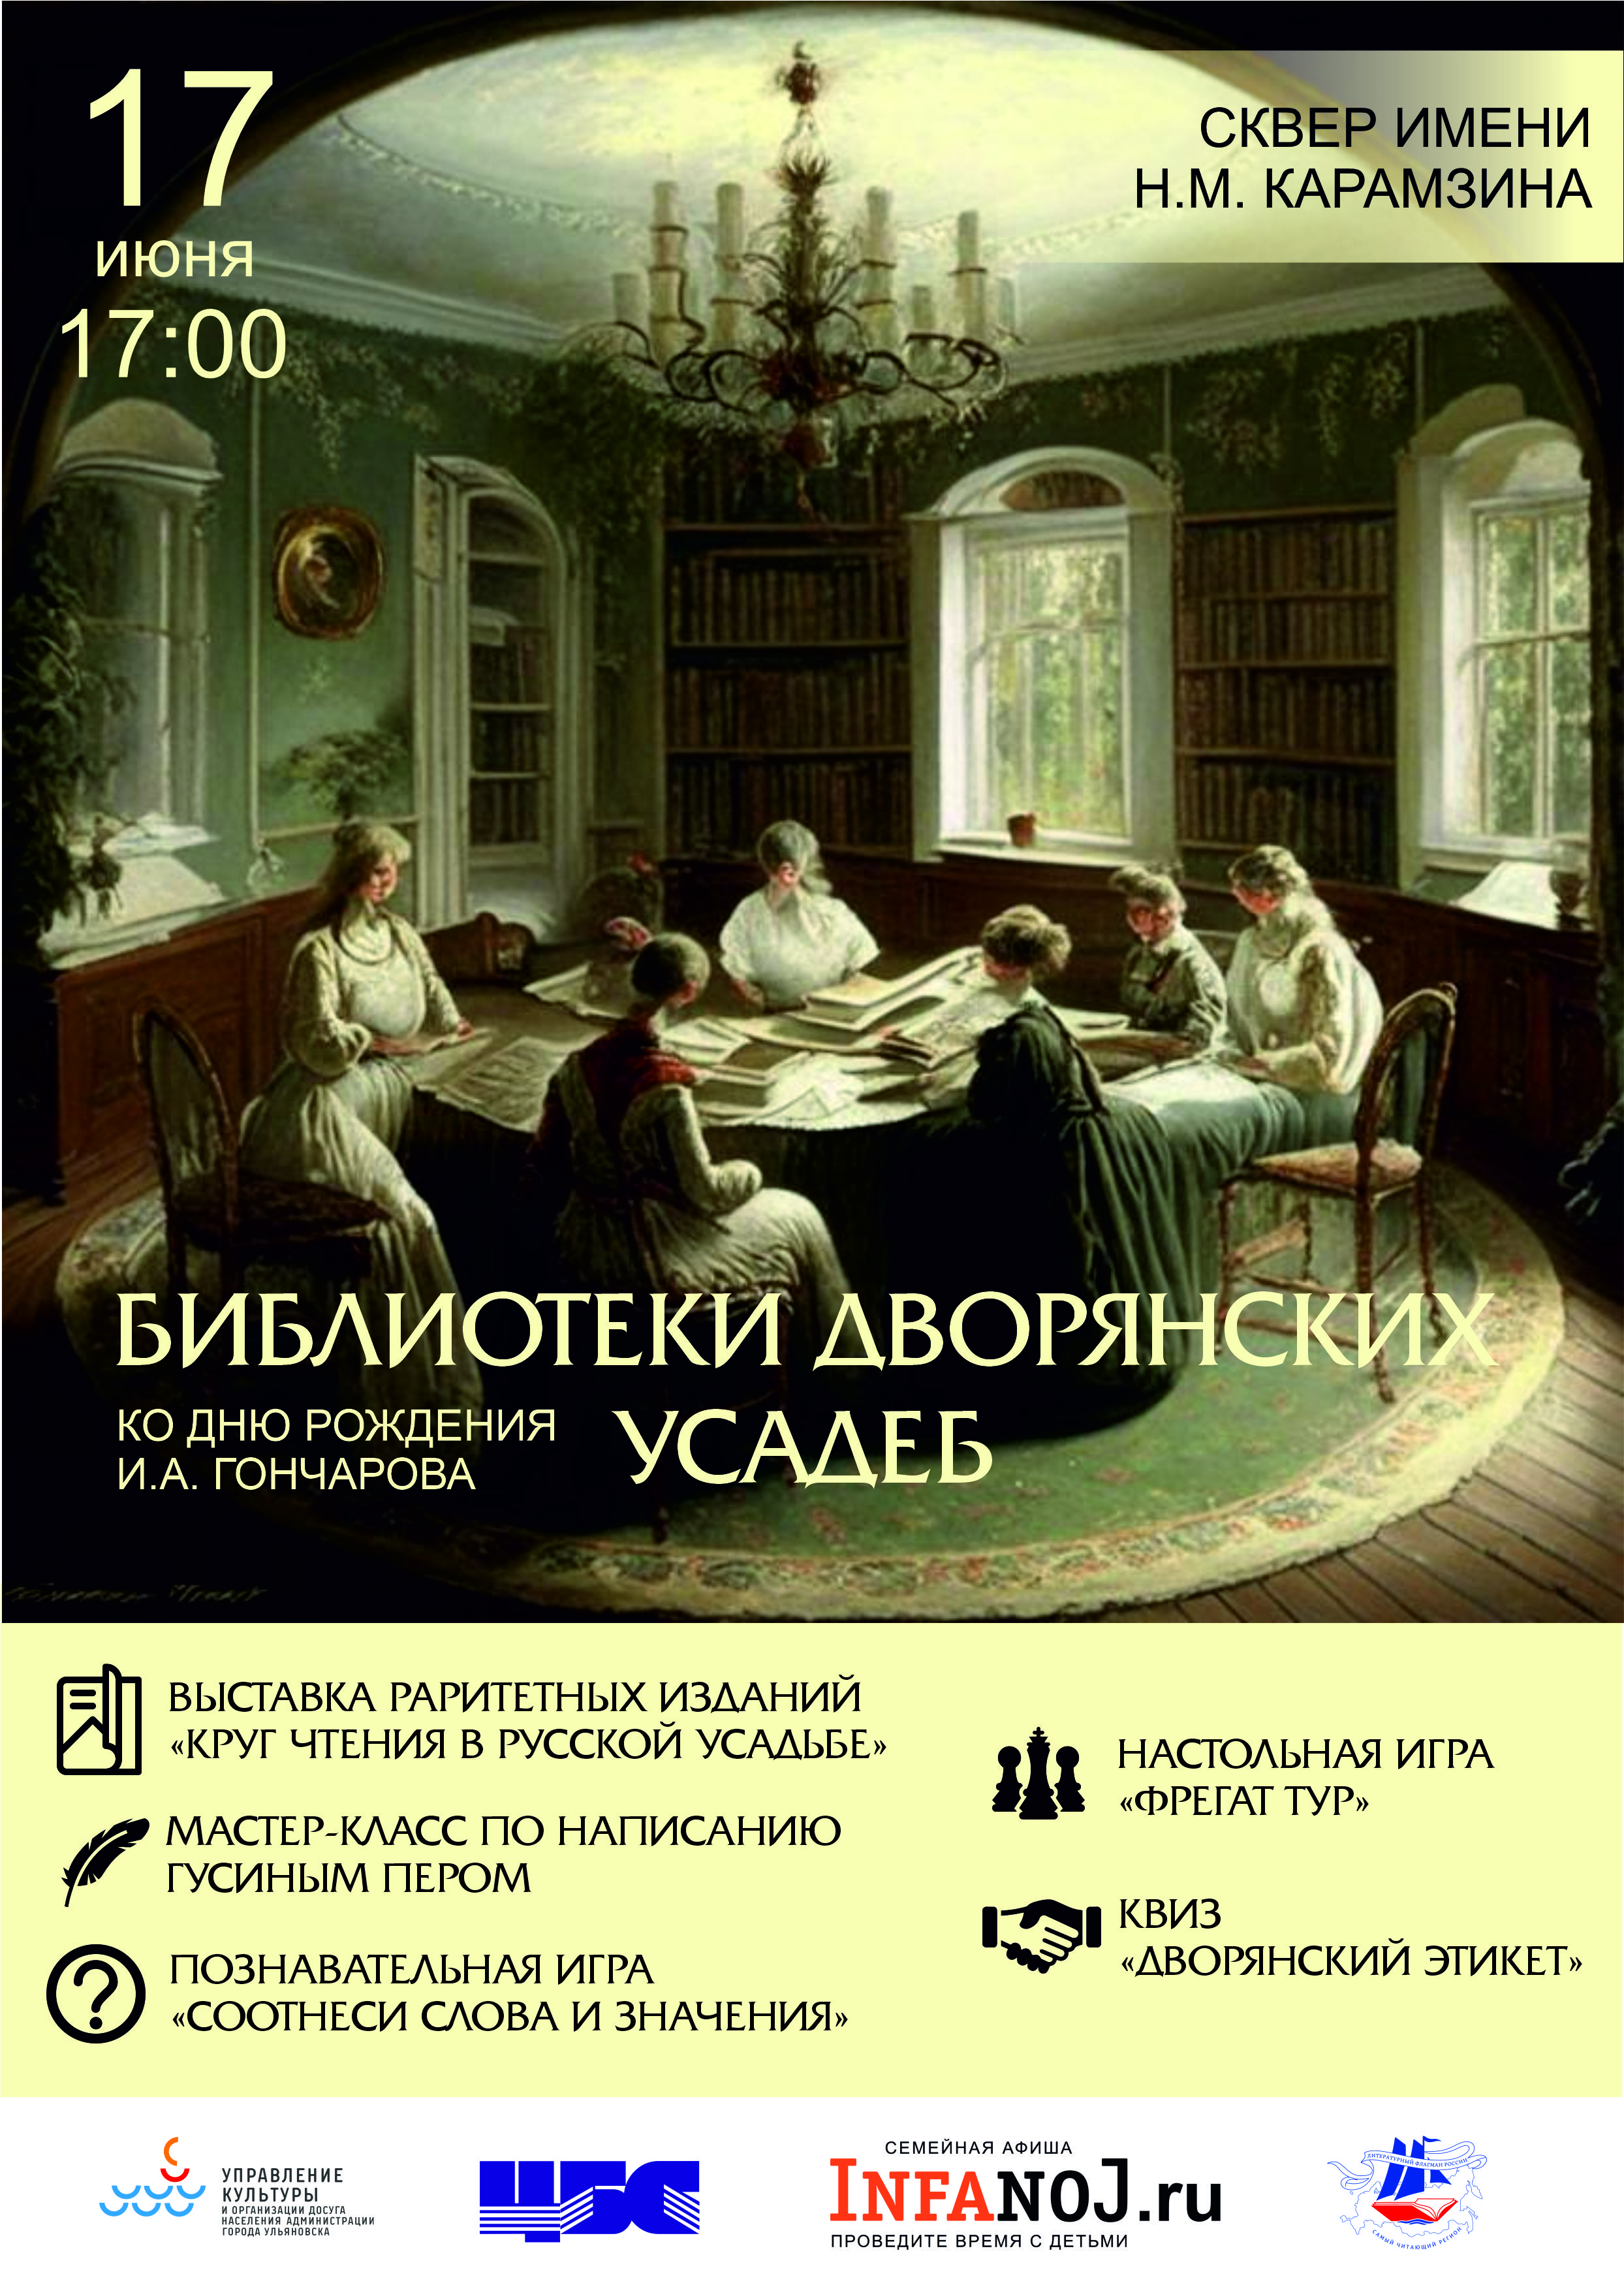 Ульяновцев приглашают на интерактивную программу «Библиотеки дворянских усадеб».